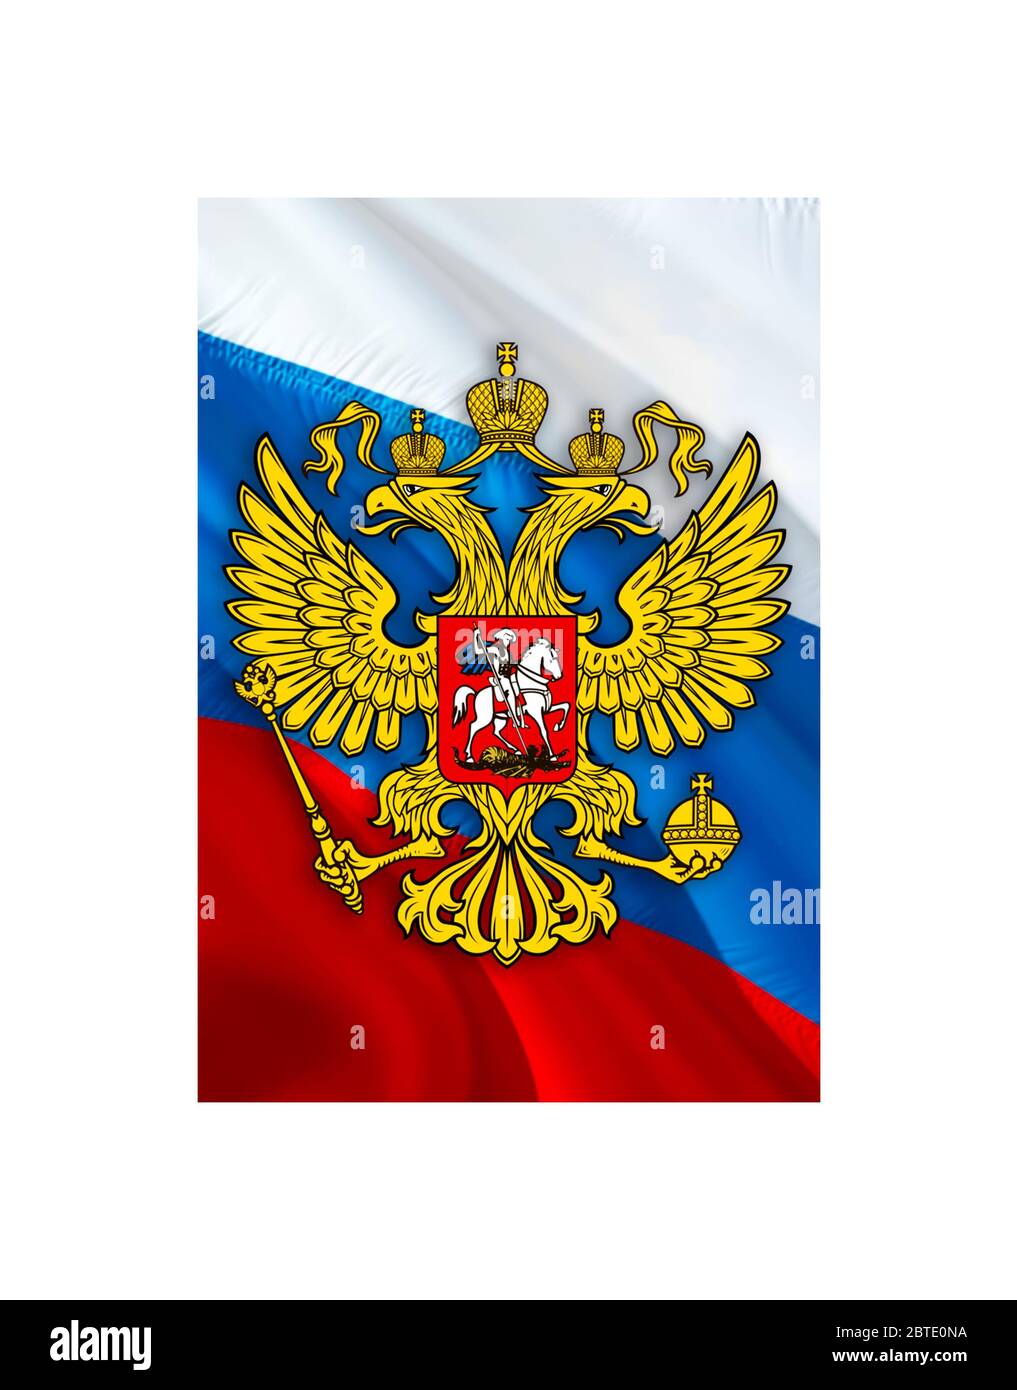 Russland Emblem auf der Russischen Föderation Flagge Design auf Russland  Hintergrund, 3d-Rendering. Russland Flagge Hintergrund für russische  Feiertage. Russland Flagge backgroun Stockfotografie - Alamy